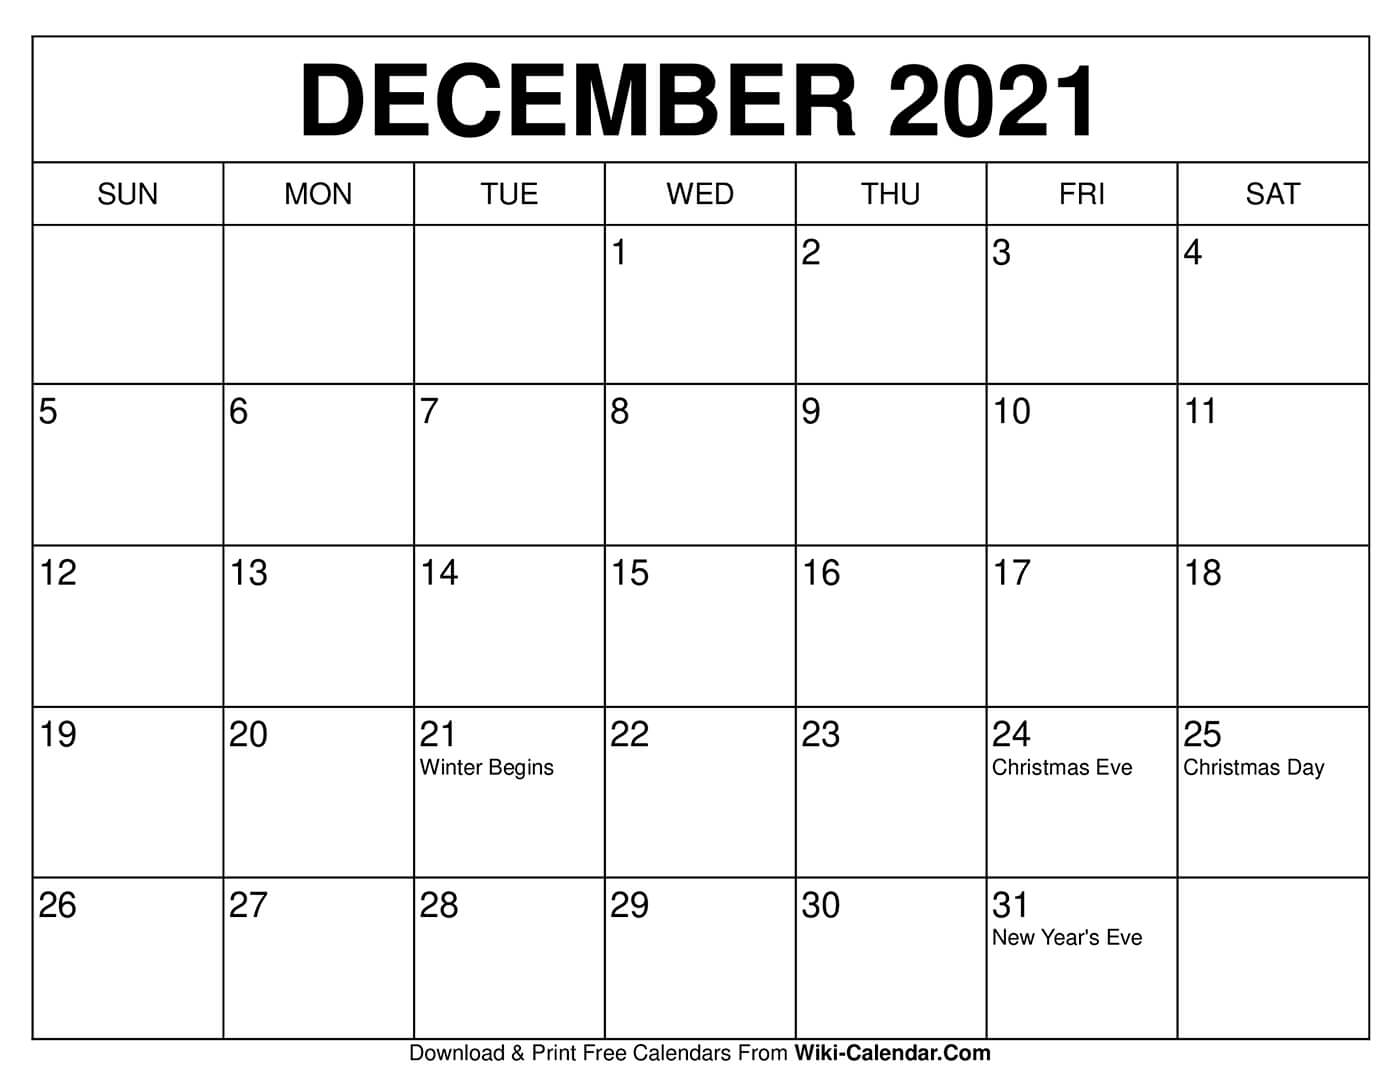 Catch 2021 Calendar Printable December Christmas